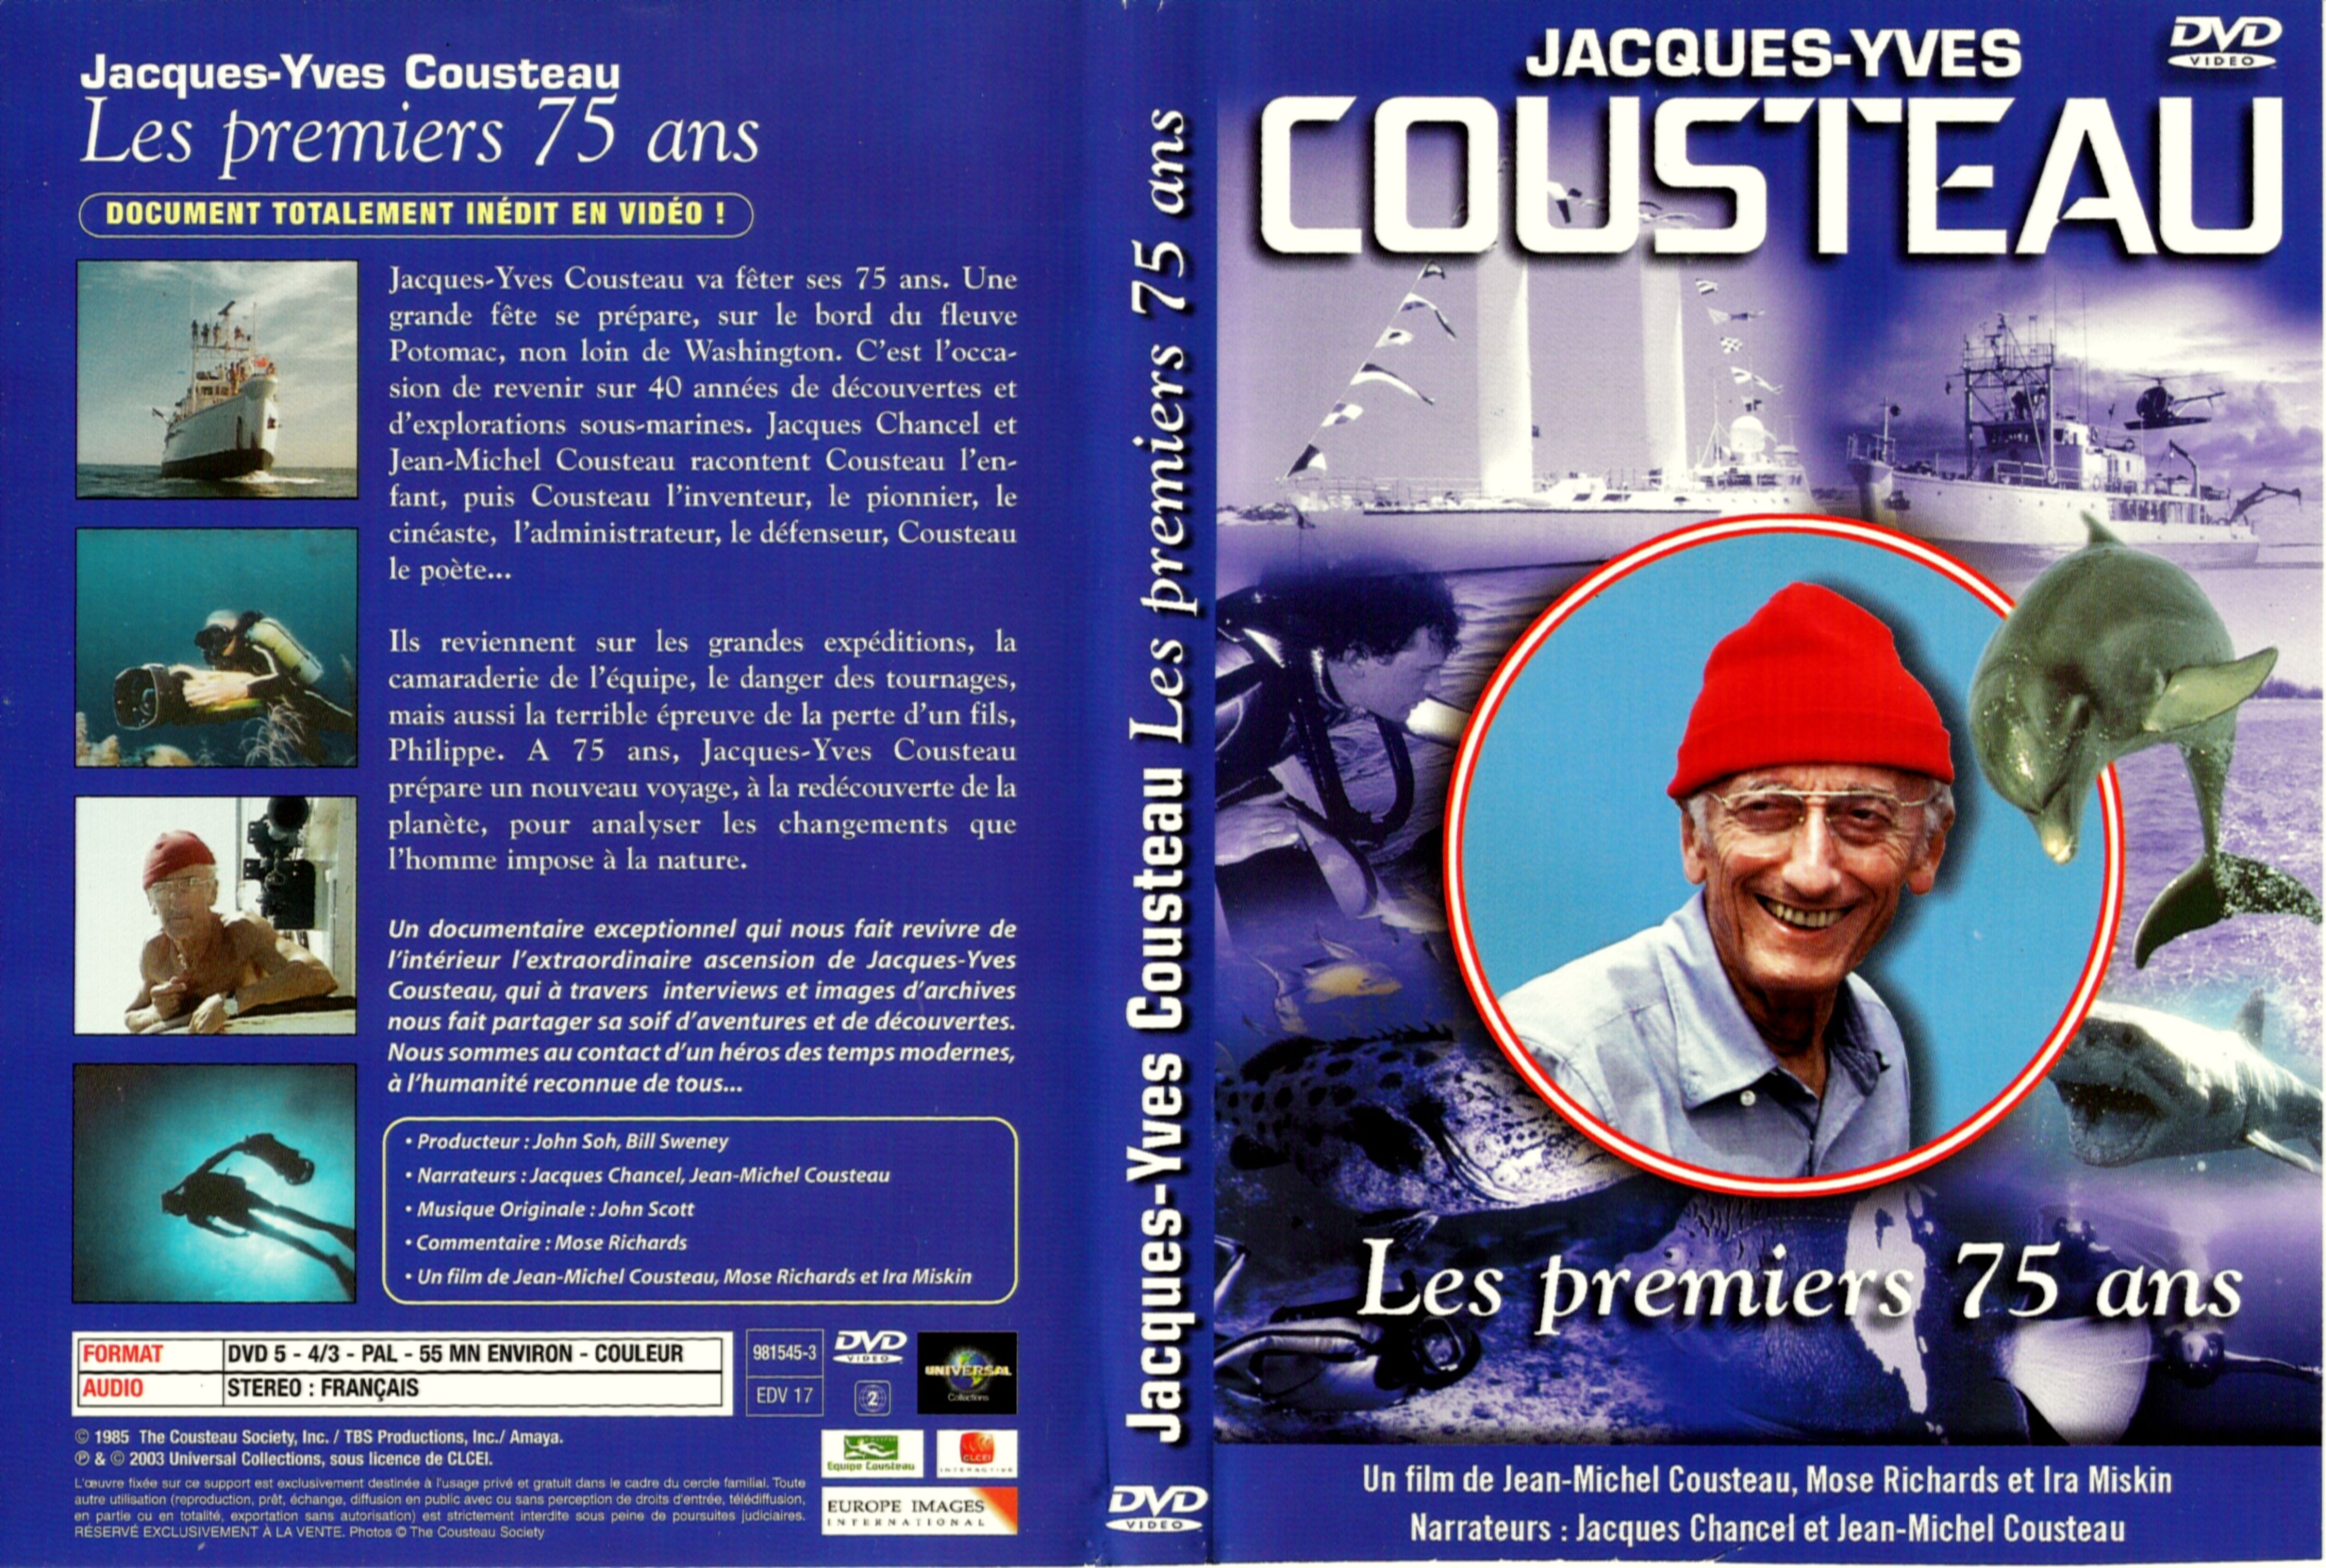 Jaquette DVD Cousteau collection les premiers 75 ans